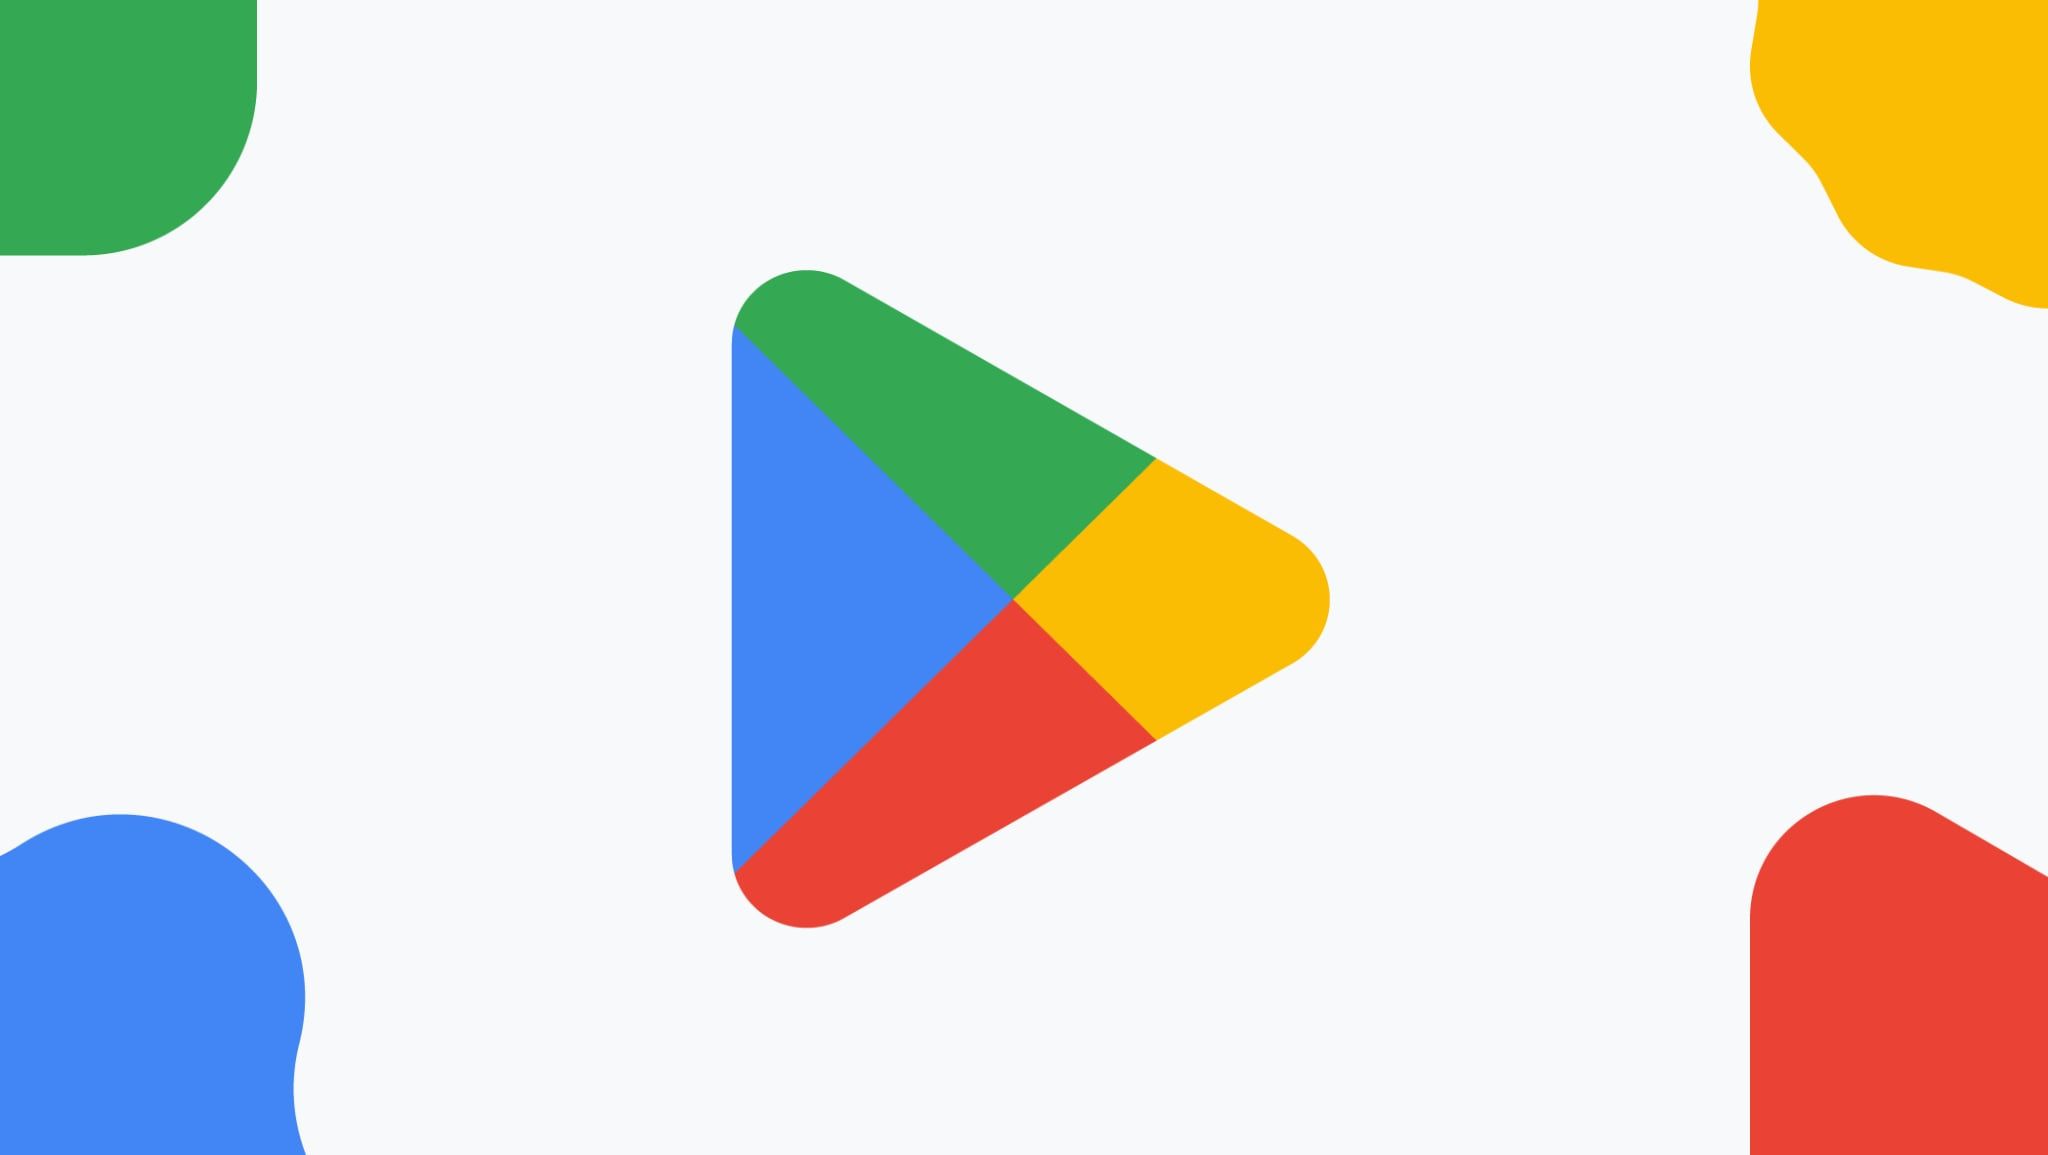 Garantindo aplicativos de alta qualidade no Google Play